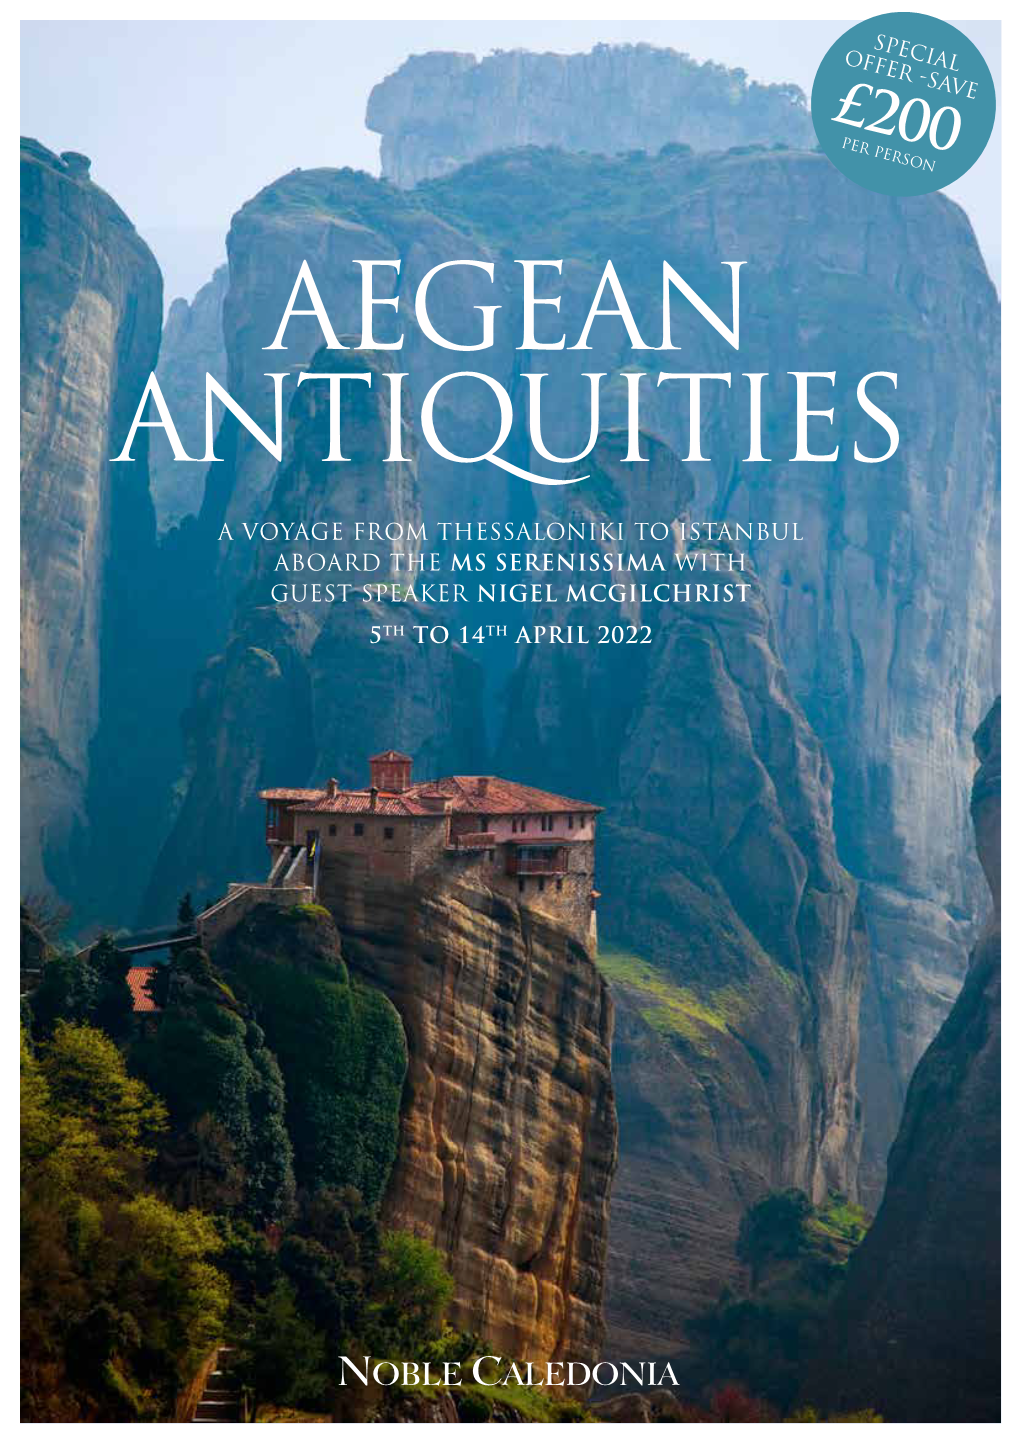 Aegean Antiquities